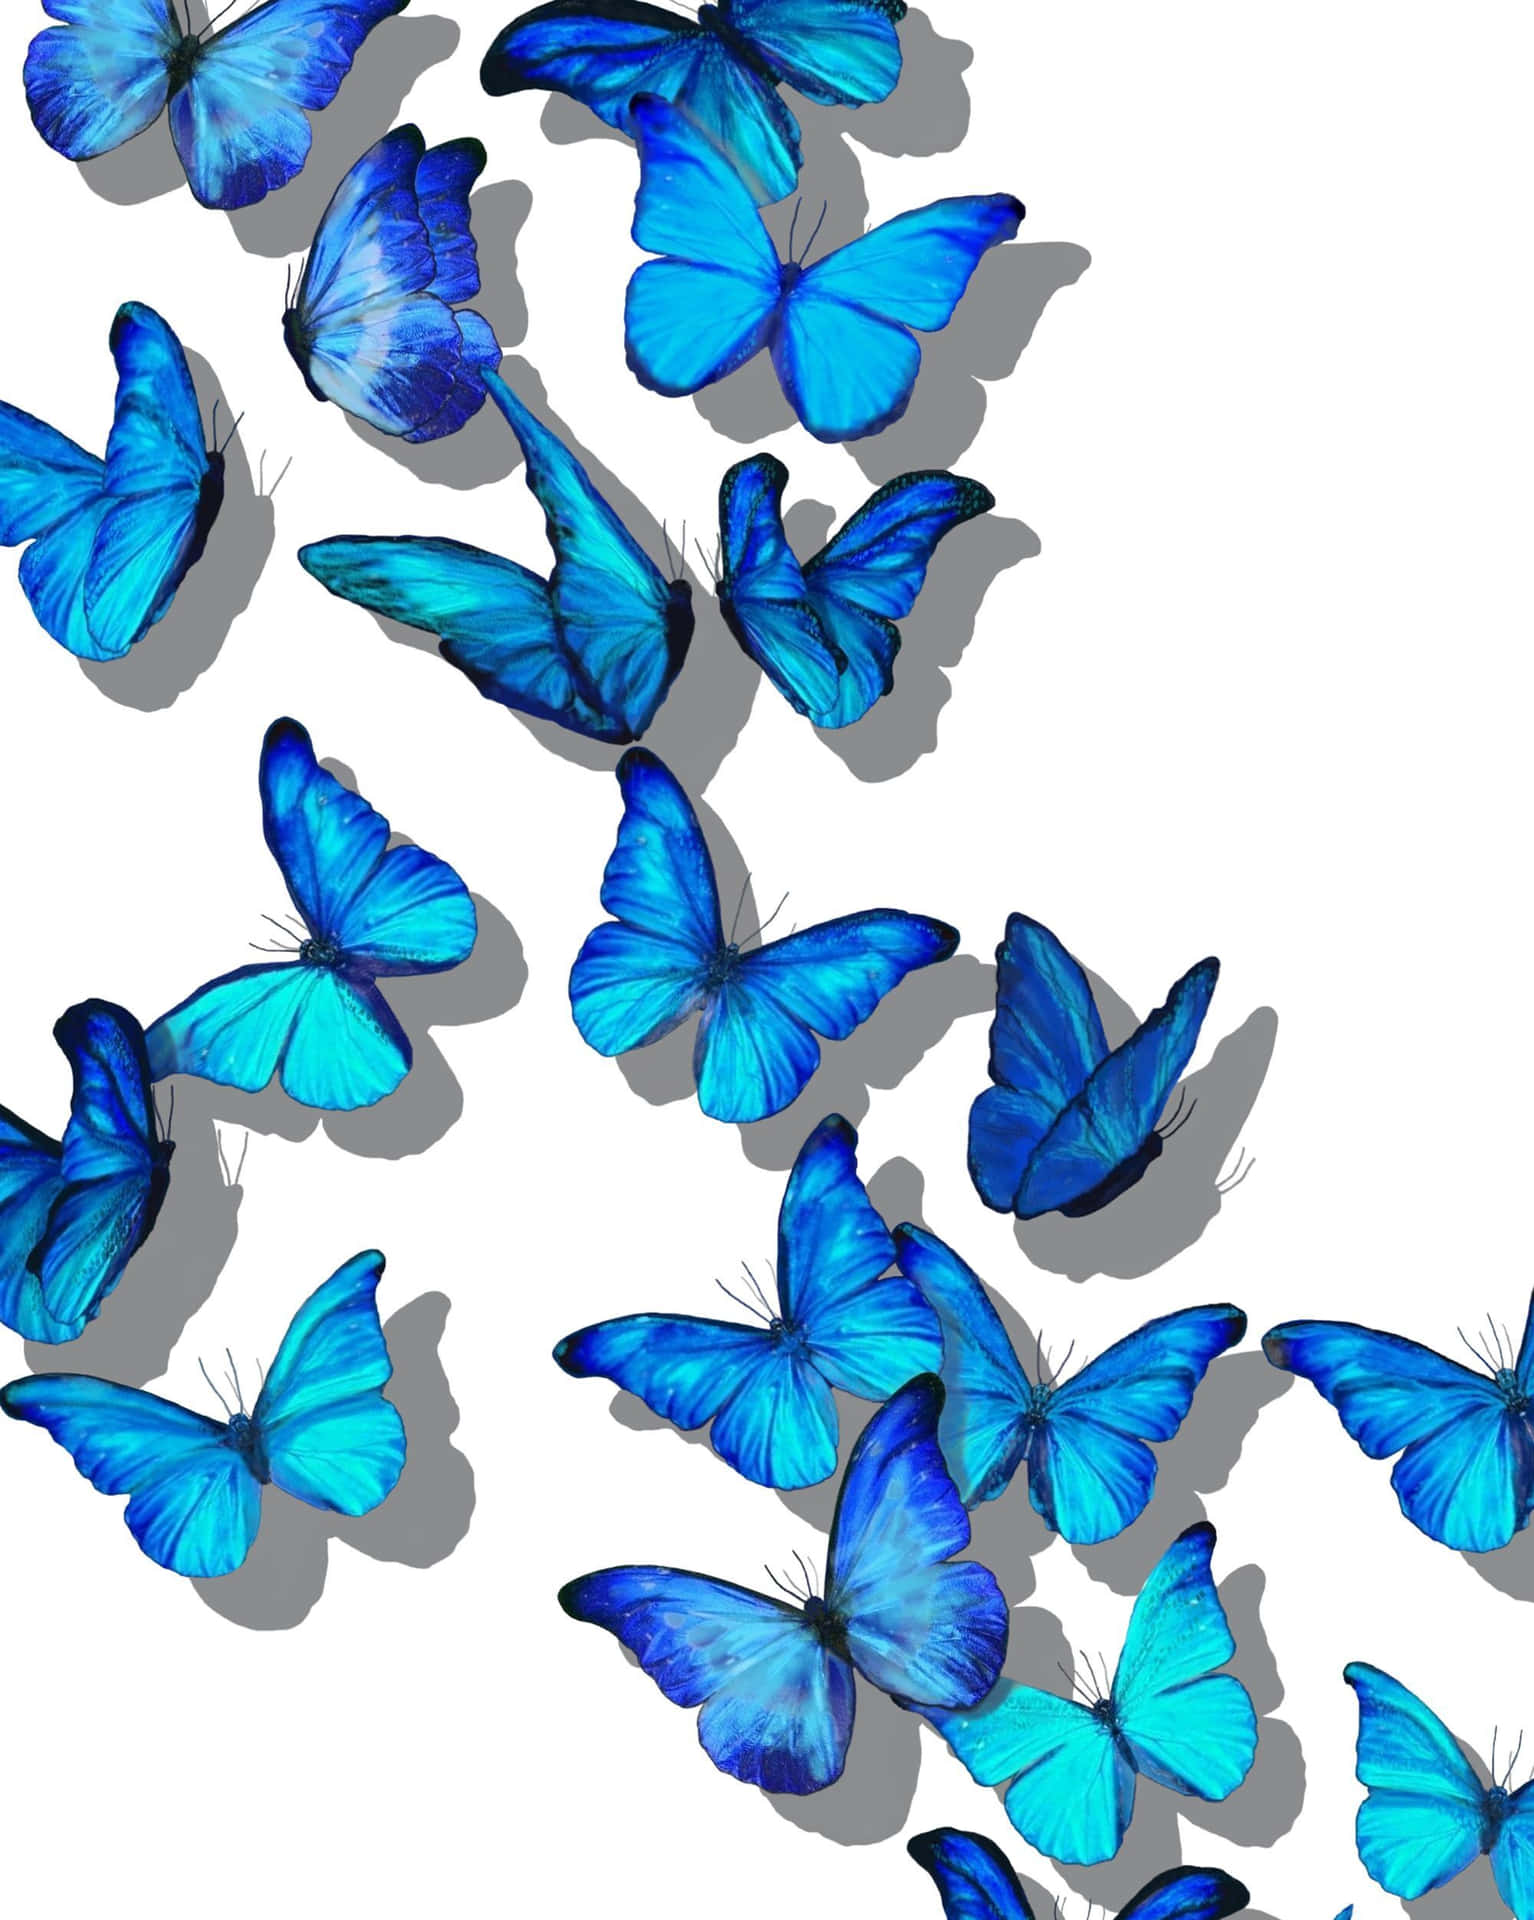 Einblauer Schmetterling Schwebt Zwischen Blühenden Blumen.